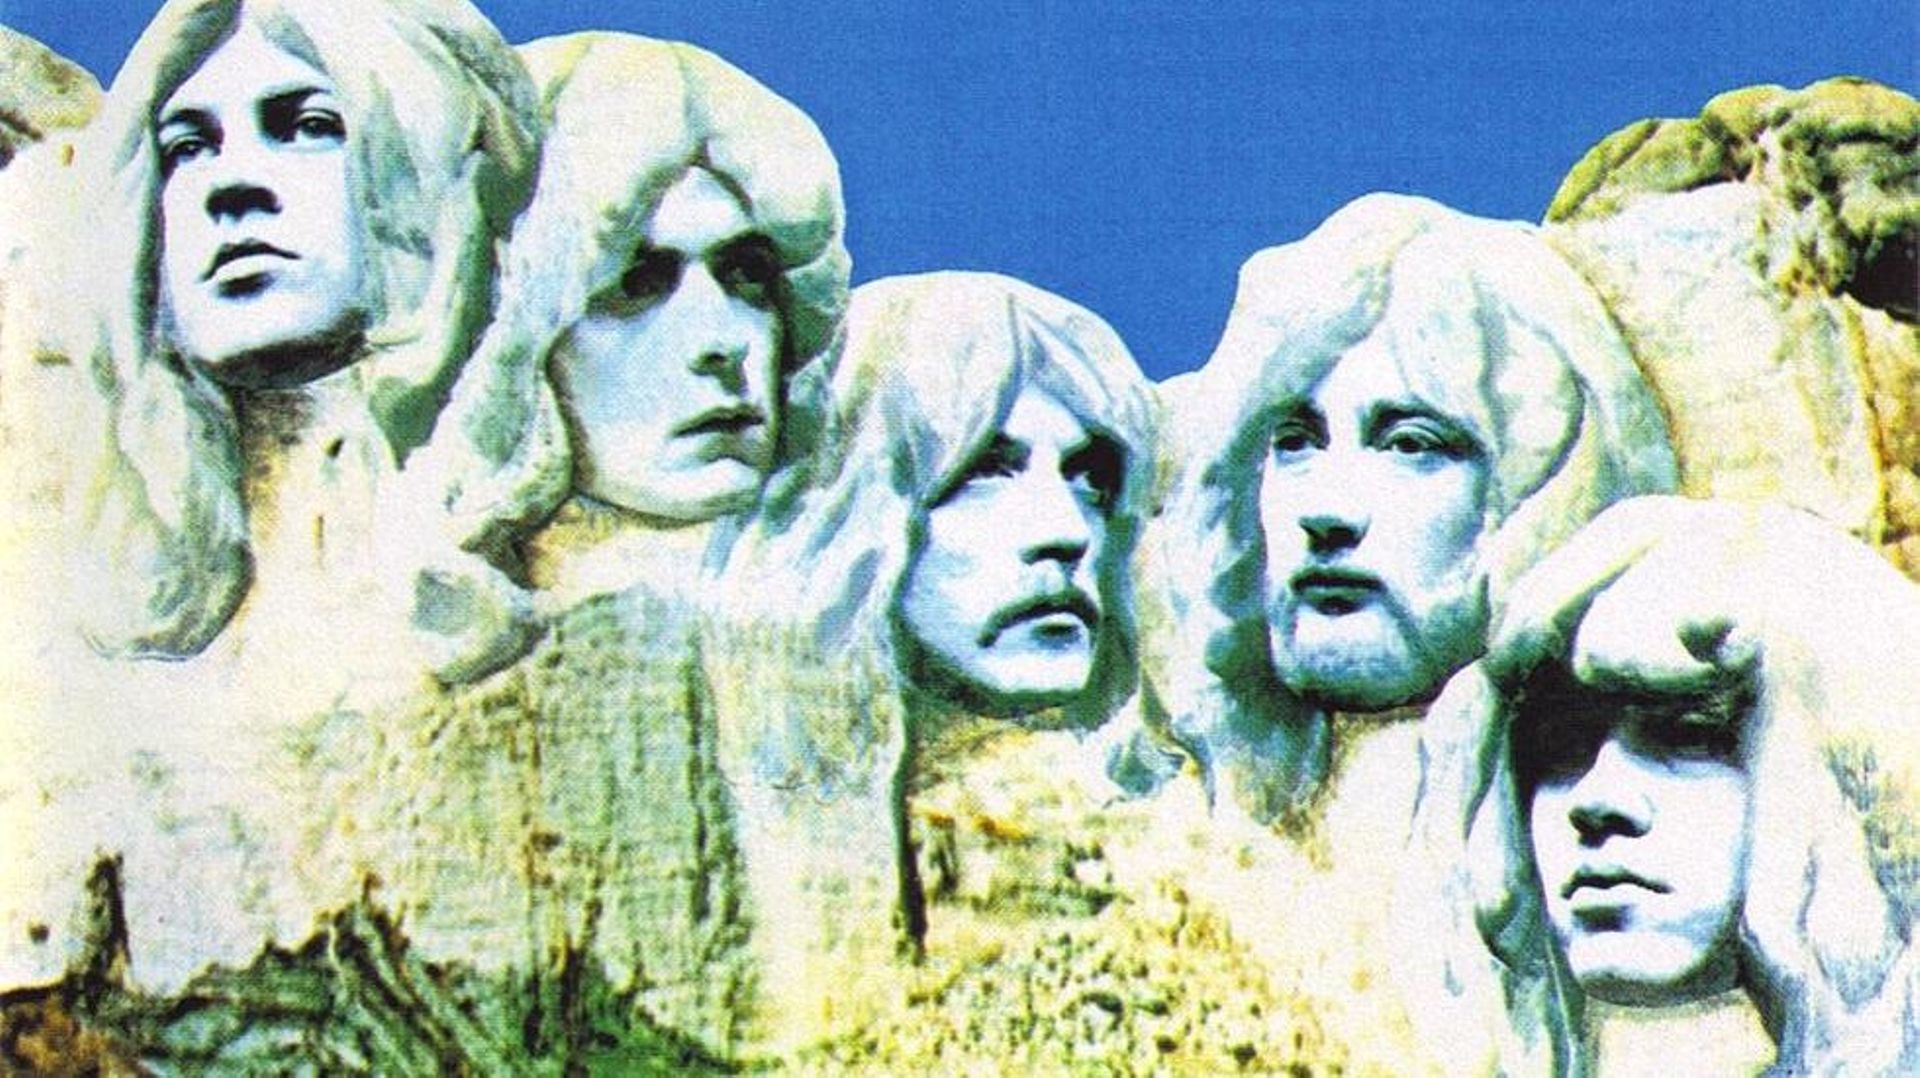 "In Rock" de Deep Purple : un album fondateur